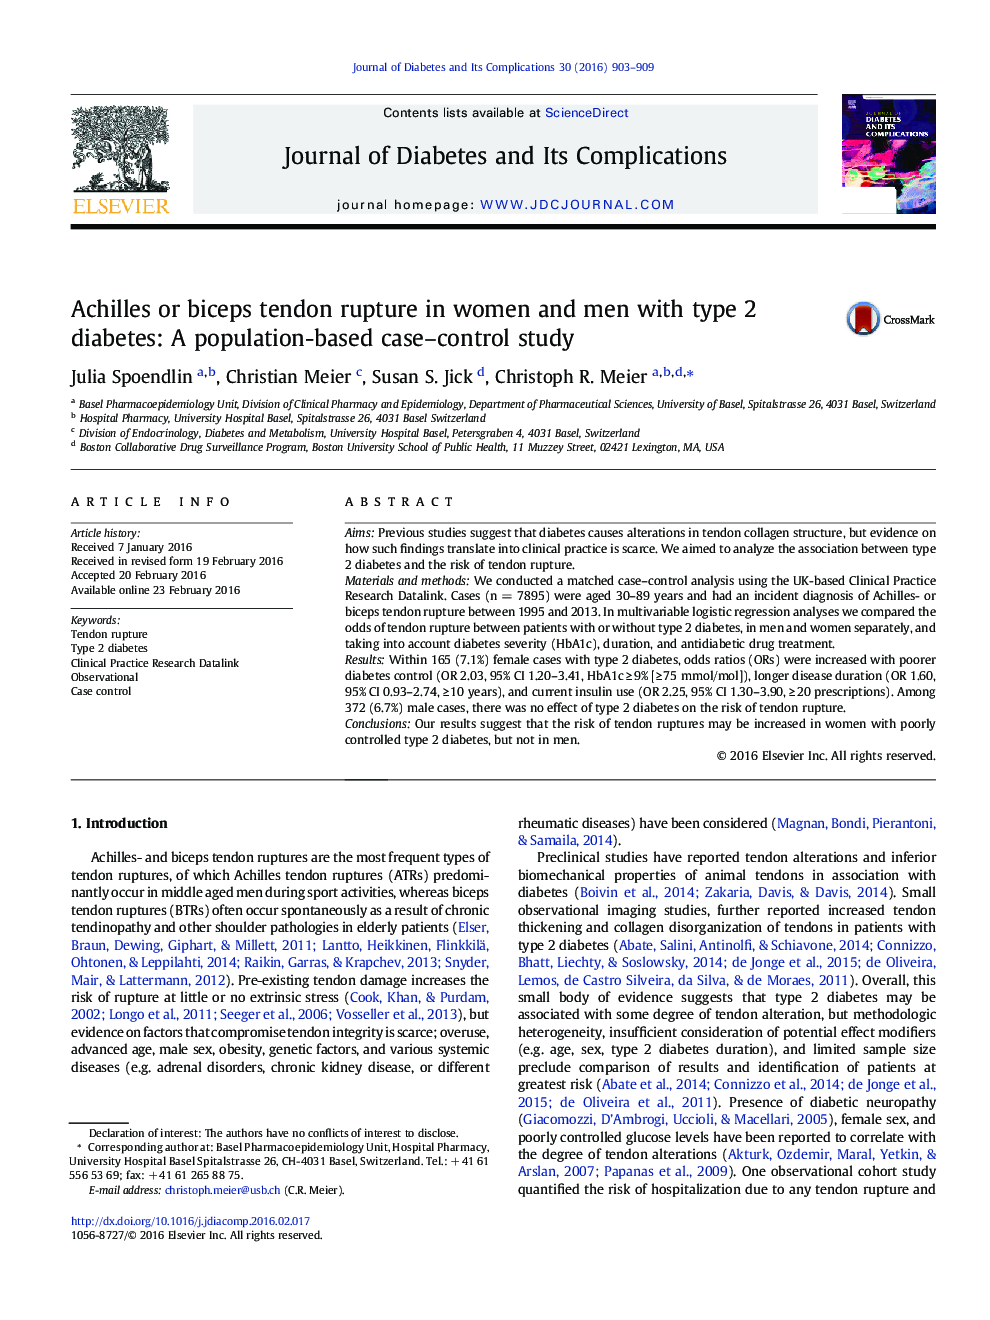 پارگی تاندون آشیل یا دو طرفه در زنان و مردان مبتلا به دیابت نوع 2: یک مطالعه کنترل قیاسی مبتنی بر جمعیت 